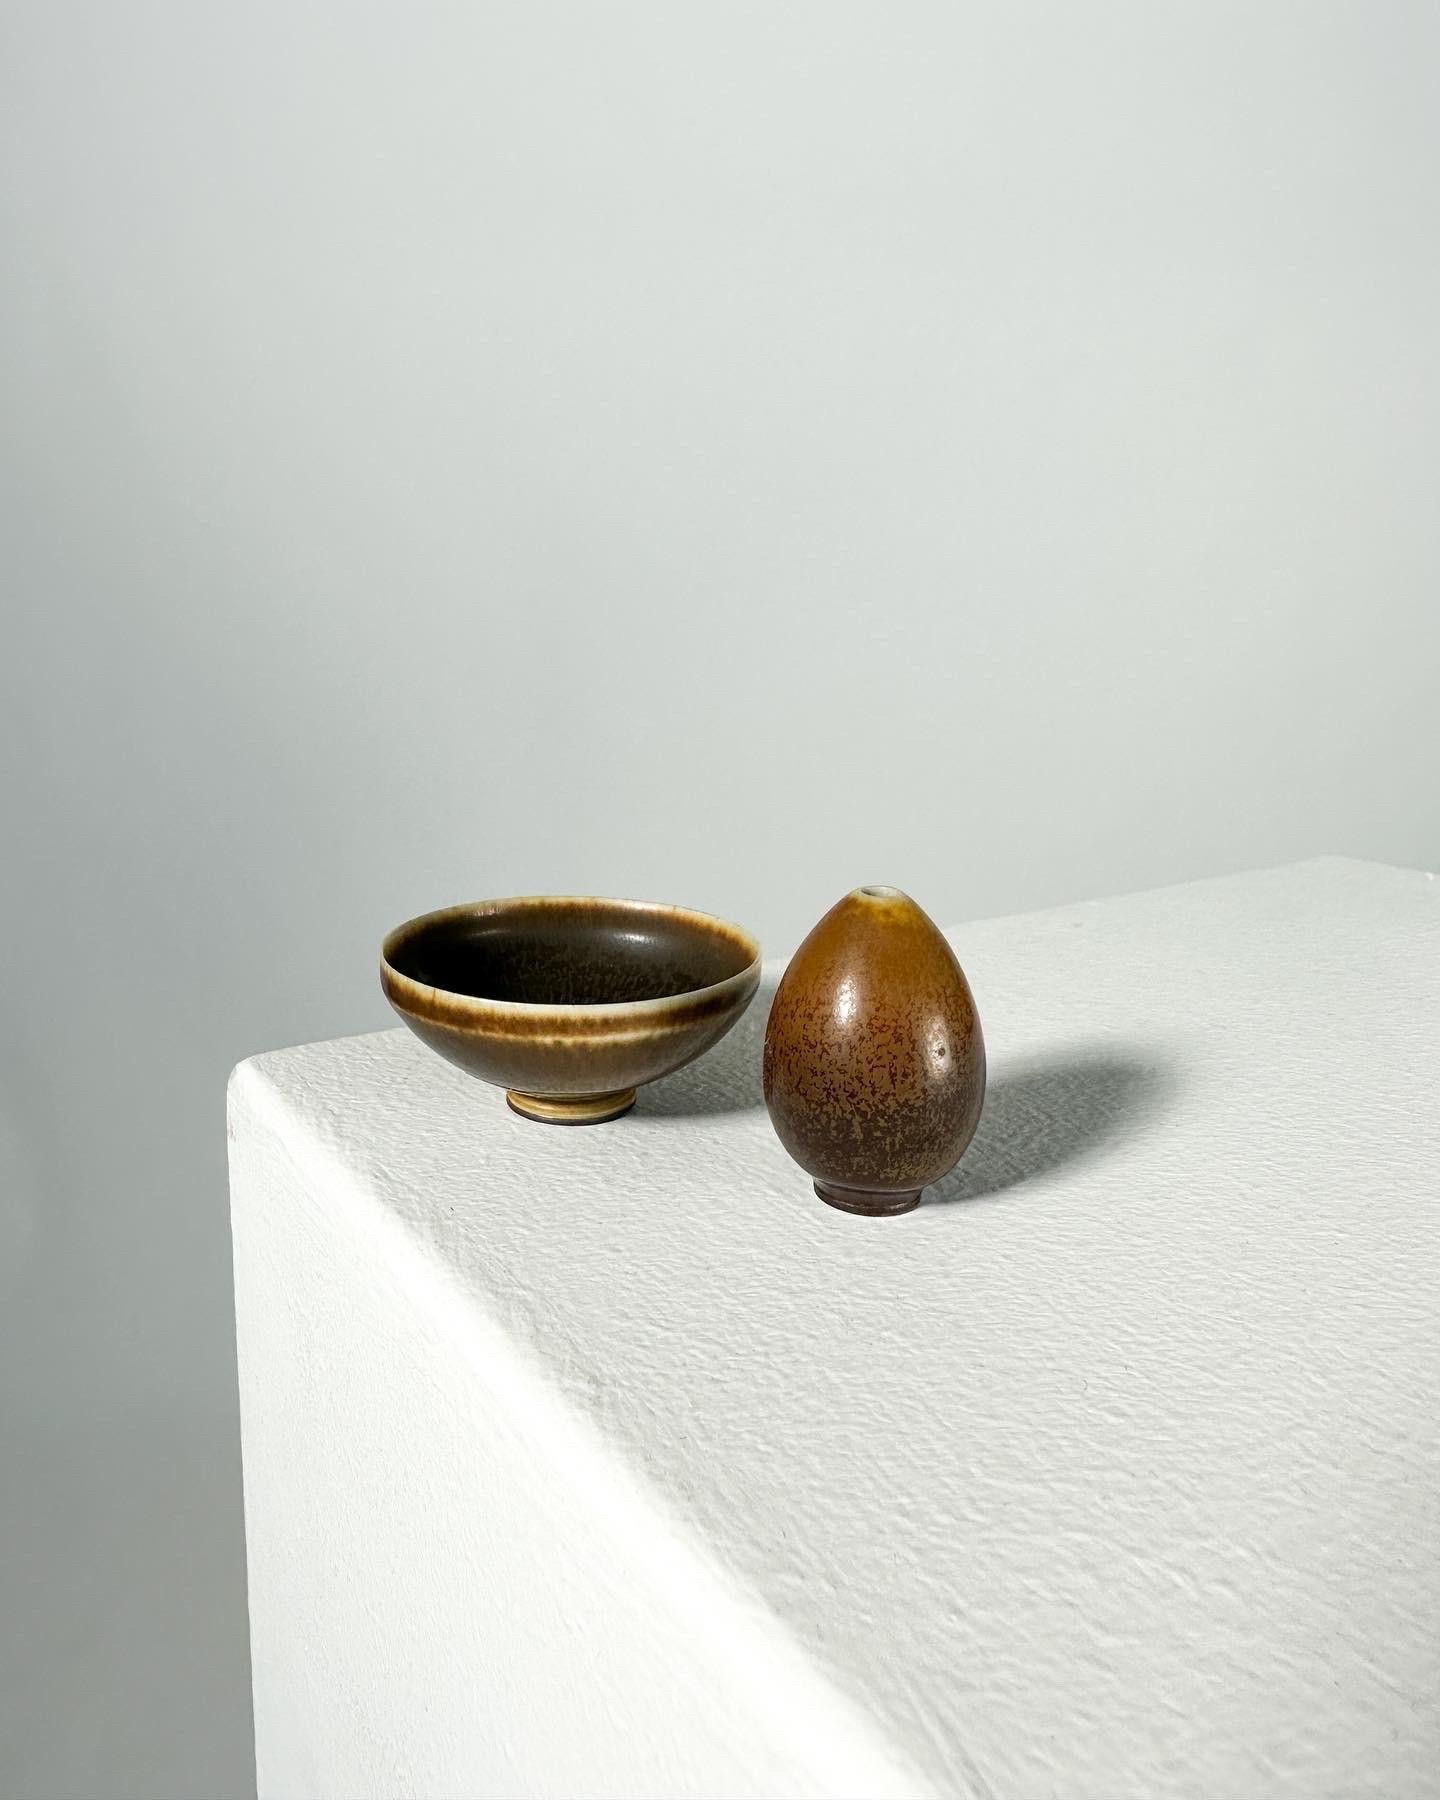 Vase à œuf miniature et bol brun de Berndt Friberg, fabriqués à la main dans son Studio à l'usine de Gustavsberg en 1957.

Tous deux en glaçure de fourrure de lièvre brune, signés de la lettre 